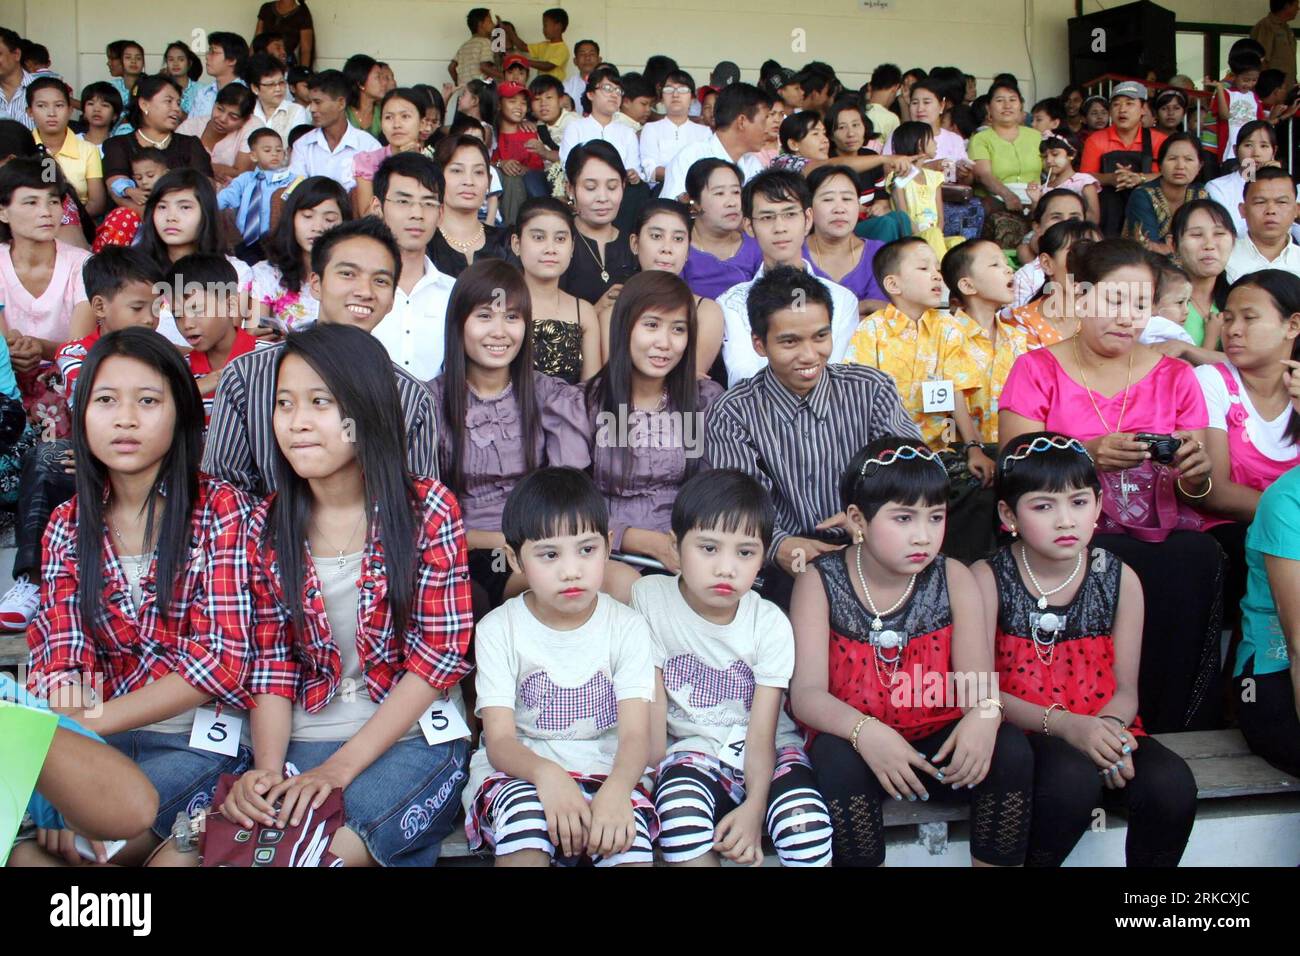 Bildnummer: 54823151 Datum: 16.01.2011 Copyright: imago/Xinhua (110116) -- YANGON, 16. Januar 2011 (Xinhua) -- die Mehrlingsschwestern posieren beim ersten Ähnlichkeitswettbewerb für Mehrlingsschwestern in Yangon, Myanmar, am 16. Januar 2011. Der Wettbewerb zog insgesamt 101 Teilnehmerpaare an.(Xinhua/Ma Phyo) (lmz) MYANMAR-YANGON-ZWILLINGE-ÄHNLICHKEITSWETTBEWERB PUBLICATIONxNOTxINxCHN Gesellschaft Zwillinge kbdig xmk 2011 quer o0 Zwillinge Drillinge Land Leute totale kurios Bildnummer 54823151 Datum 16 01 2011 Copyright Imago XINHUA Multiple Birth YINHUON 16 Jan 2011 Stockfoto